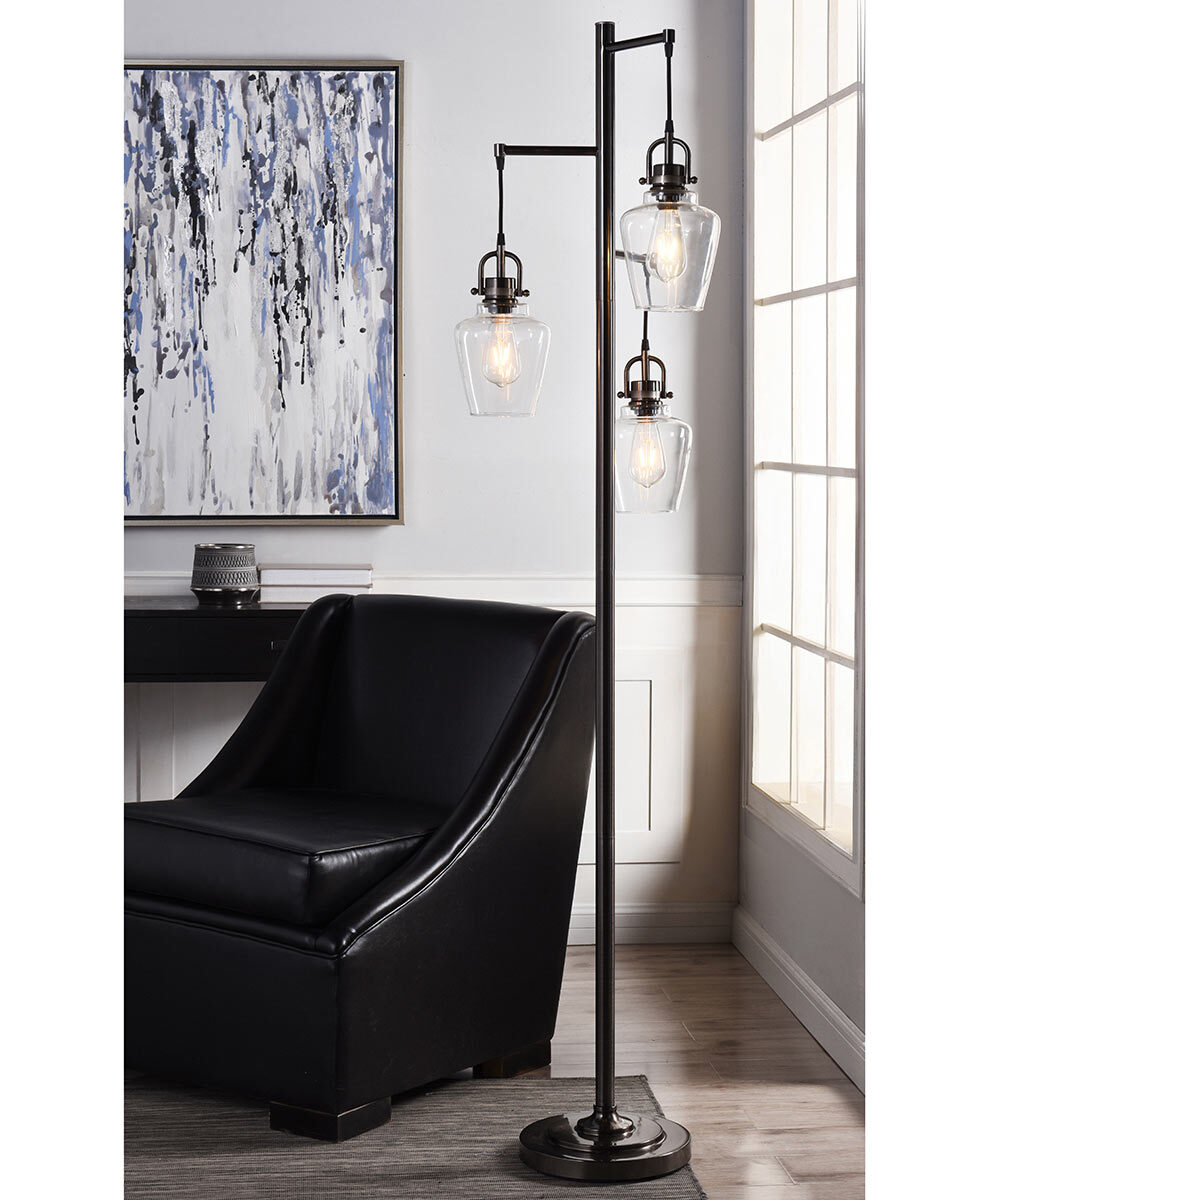 Stylecraft Basia 3 Arm Nickel Floor, Stylecraft Table Lamps Costco